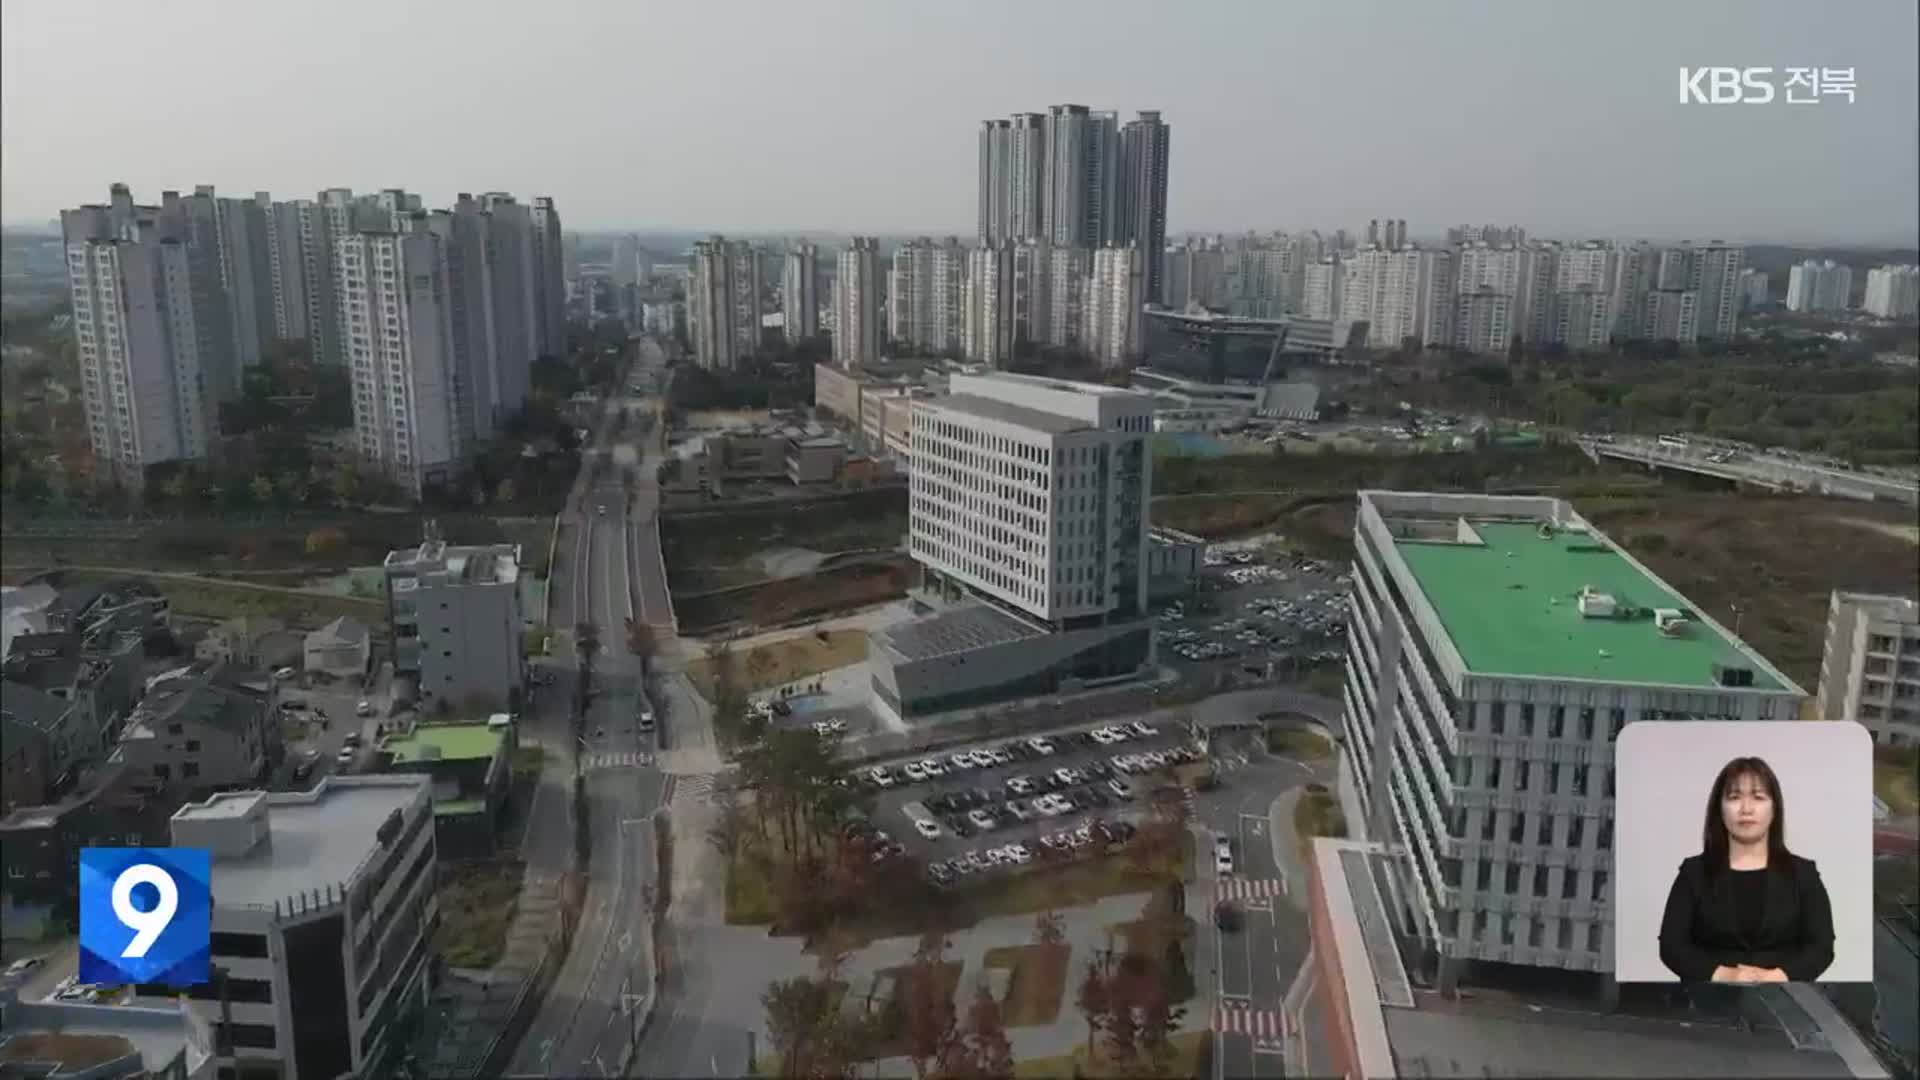 “전북혁신도시, 농생명 중심 산업생태계 구축해야”